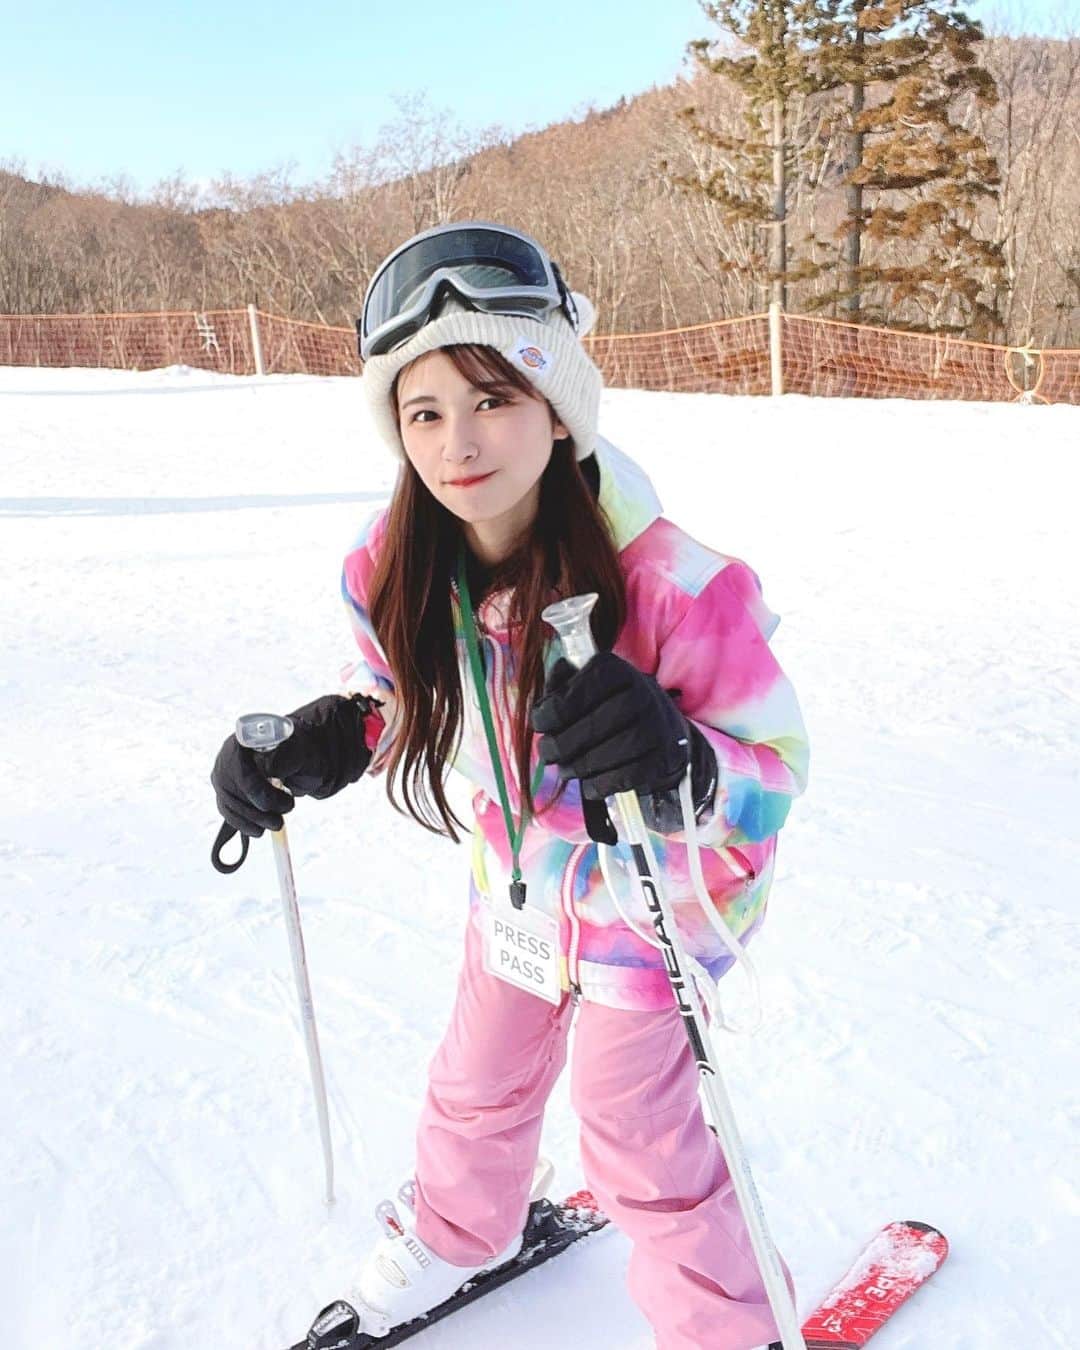 日比野友香のインスタグラム：「スキー女子💗💭❄️        〜ケーブルテレビ〜 【UP！アップ！ #関ガール シーズン2 】    ❄️⛷峰山高原リゾートスキー合宿🎿❄️  高校生ぶりのスキーだったけど、 めっちゃ楽しかった！！！  スタッフさん達が上手すぎるので、そっちに注目してください！（笑）            #スキー  #スキーウェア  #スキー女子  #スキー場  #スキー合宿  #峰山高原  #峰山高原リゾート  #雪  #雪景色  #雪山  #snow  #snowday  #snowwhite  #skiing  #skiingisfun  #冬  #winter  #wintersports  #ゲレンデマジック  #ゲレンデ  #関西  #ケーブルテレビ #イメージガール  #関ガール  #関西 #ケーブルテレビ  #巻き髪 #ヘアアレンジ #タレント  #グラビア  #グラビアアイドル  #グラドル」